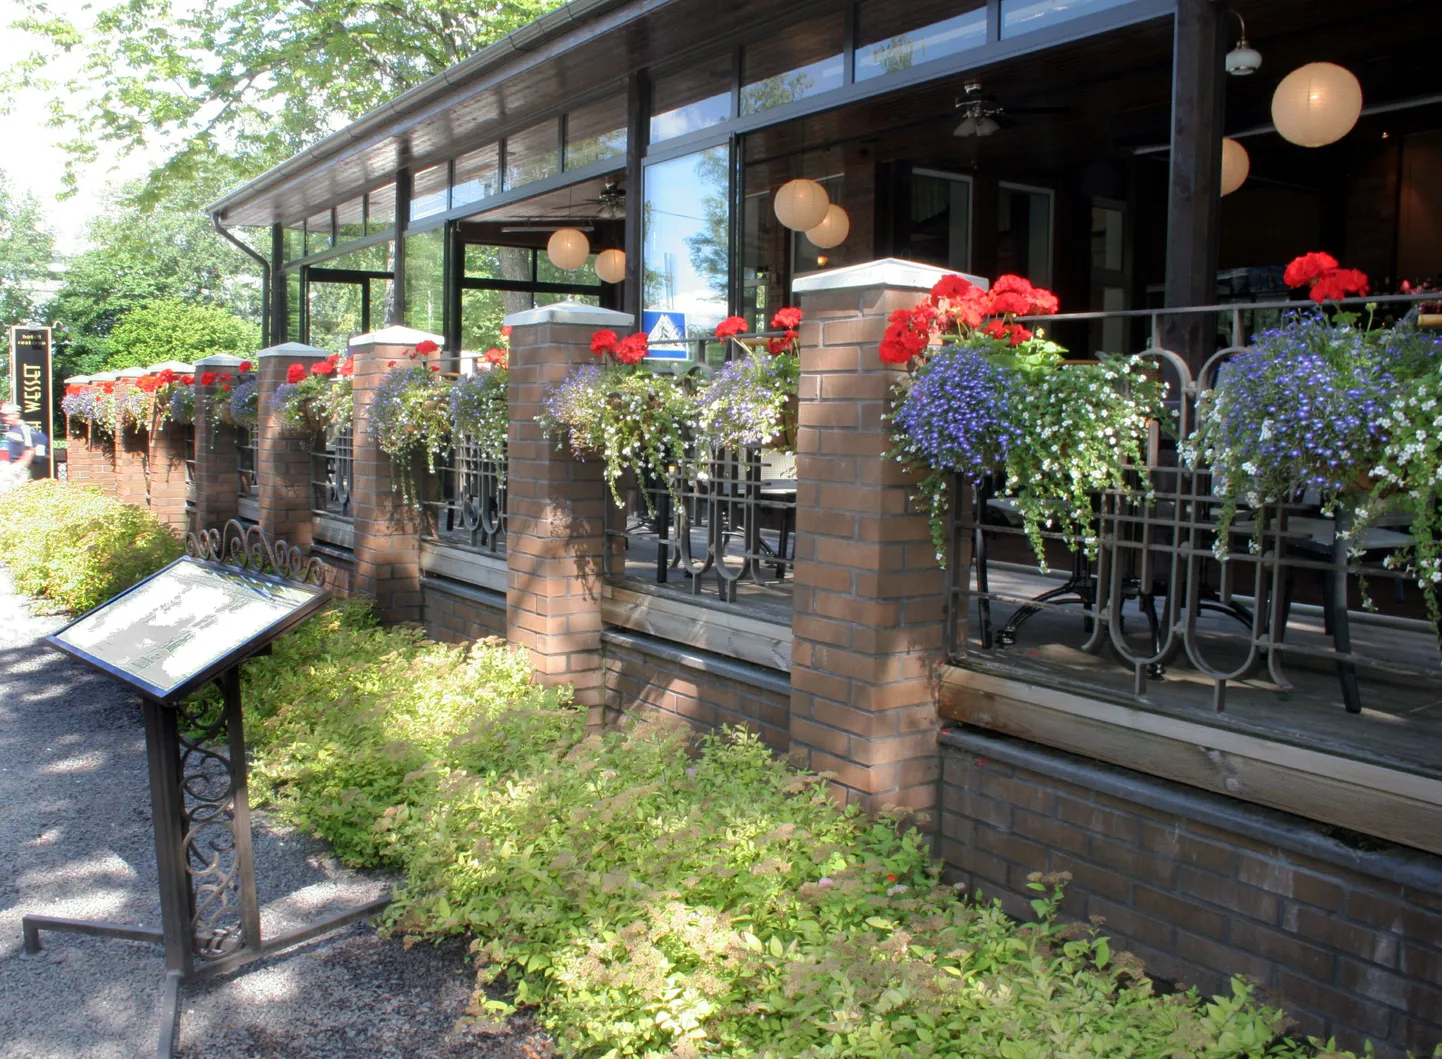 Ranna piirkonna elanikke oodatakse augustis avama koduaias kohvikuid. Pildil villa Wesseti välikohvik.